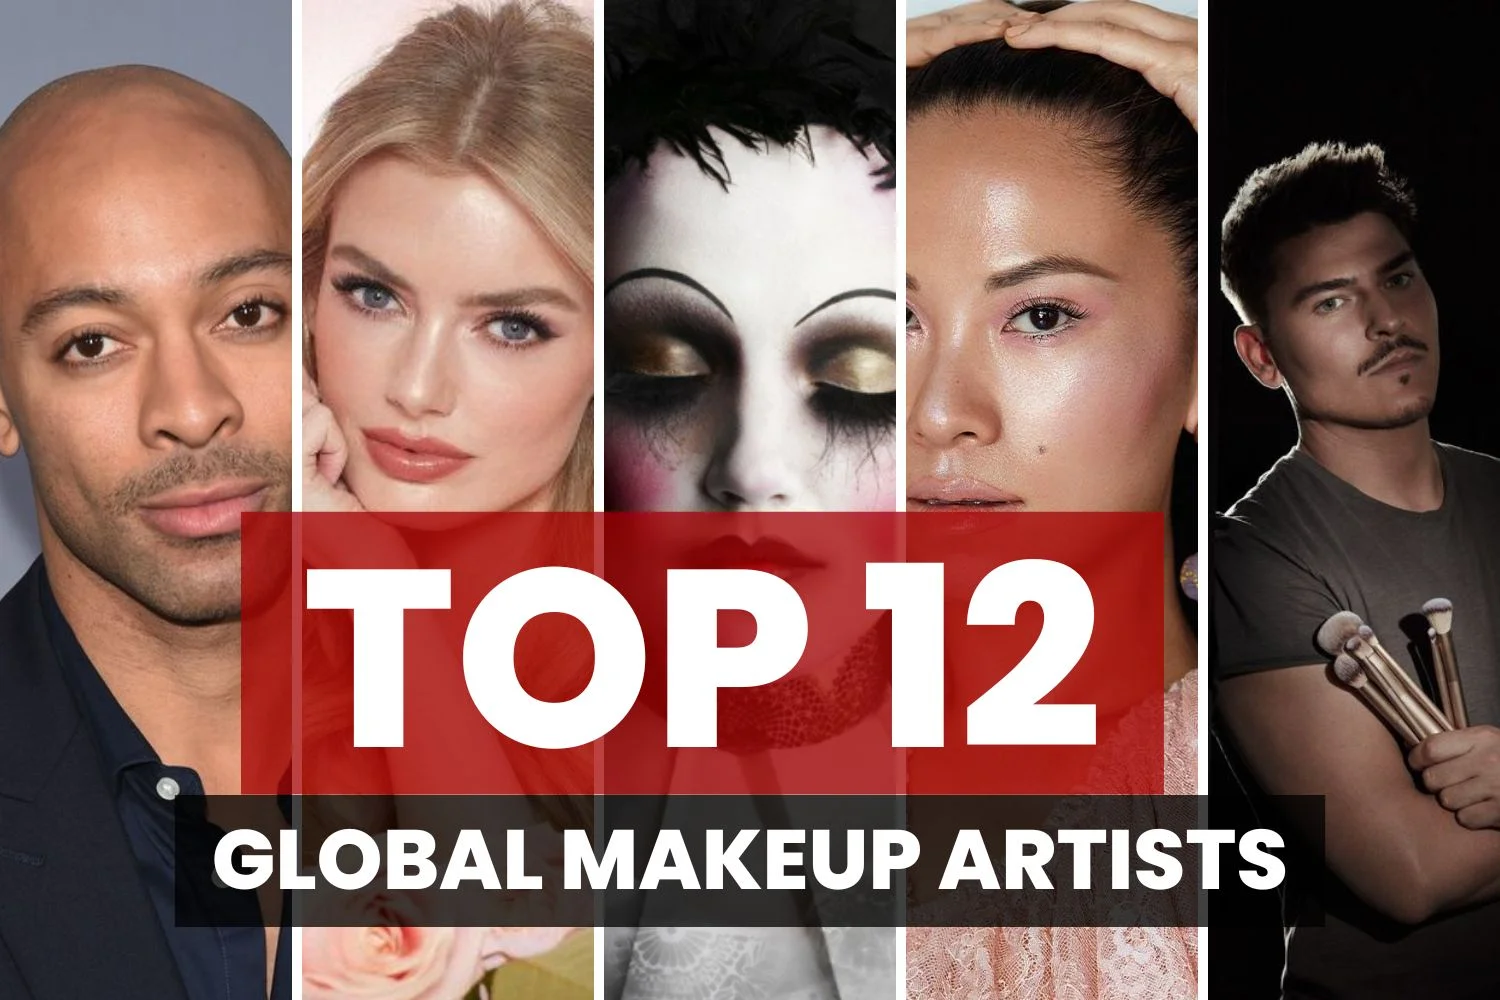 Top 12 Global Makeup Artists